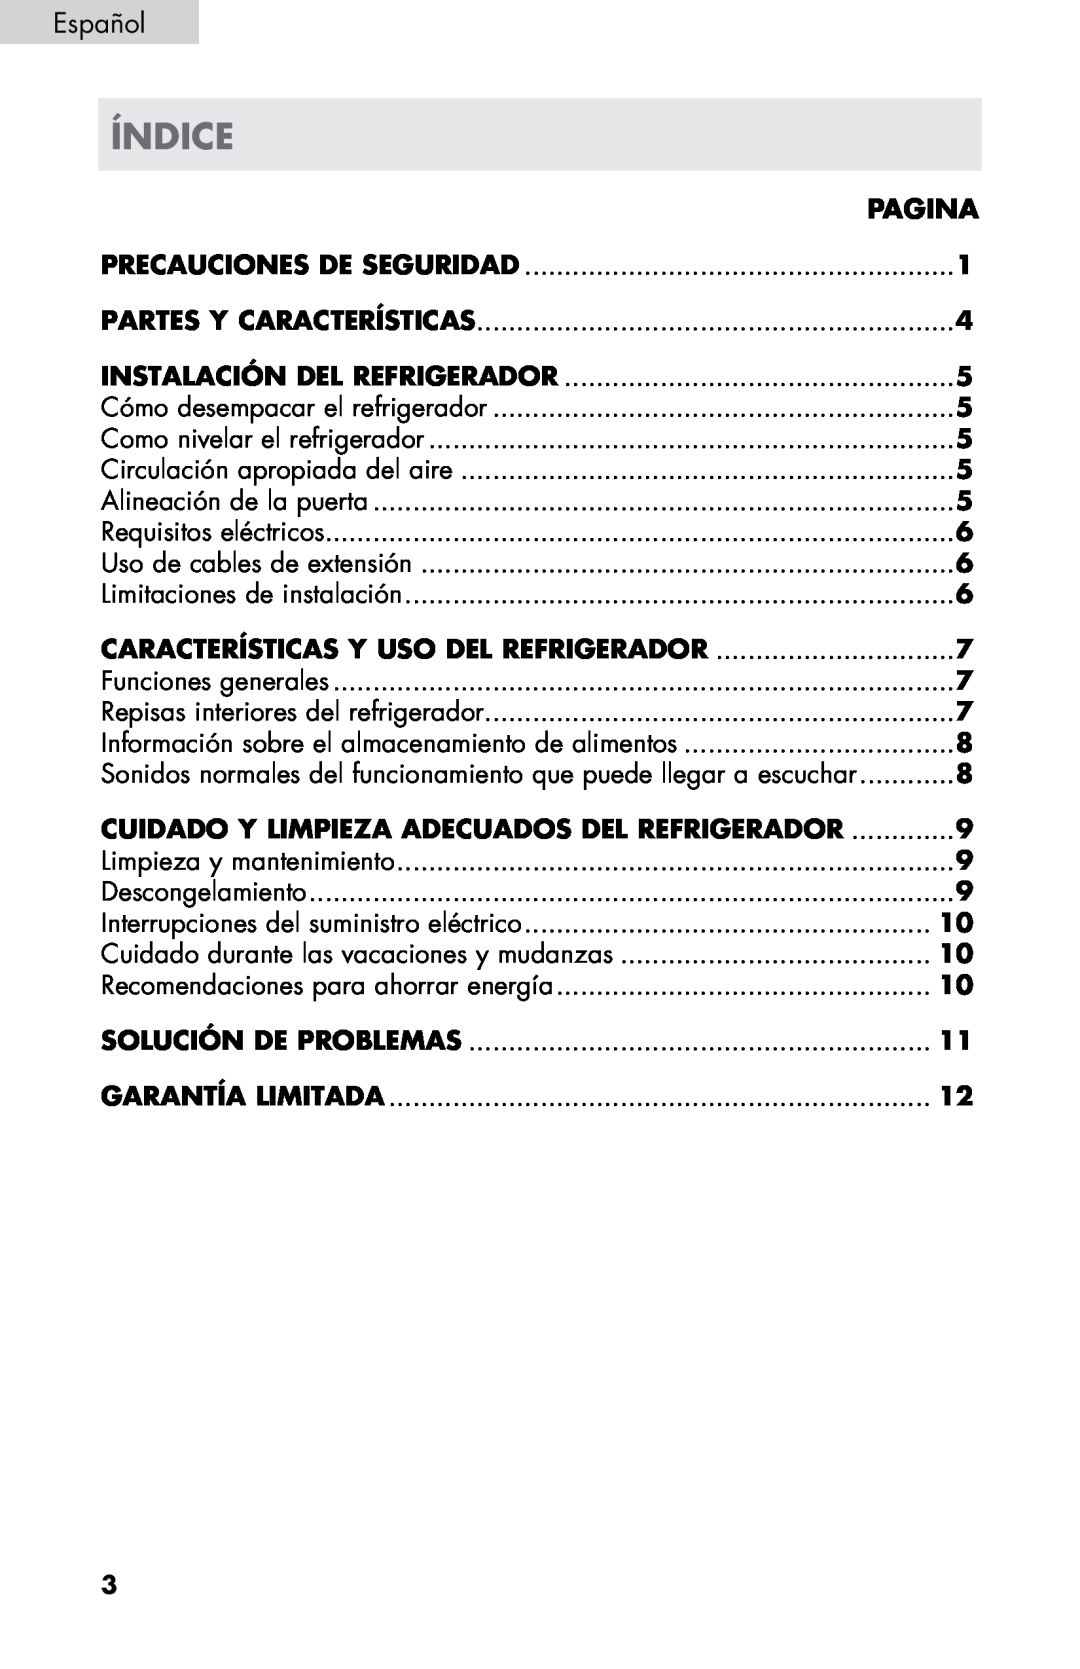 Haier HC17SF15RW Índice, Español, Pagina, Precauciones De Seguridad, Partes Y Características, Alineación de la puerta 